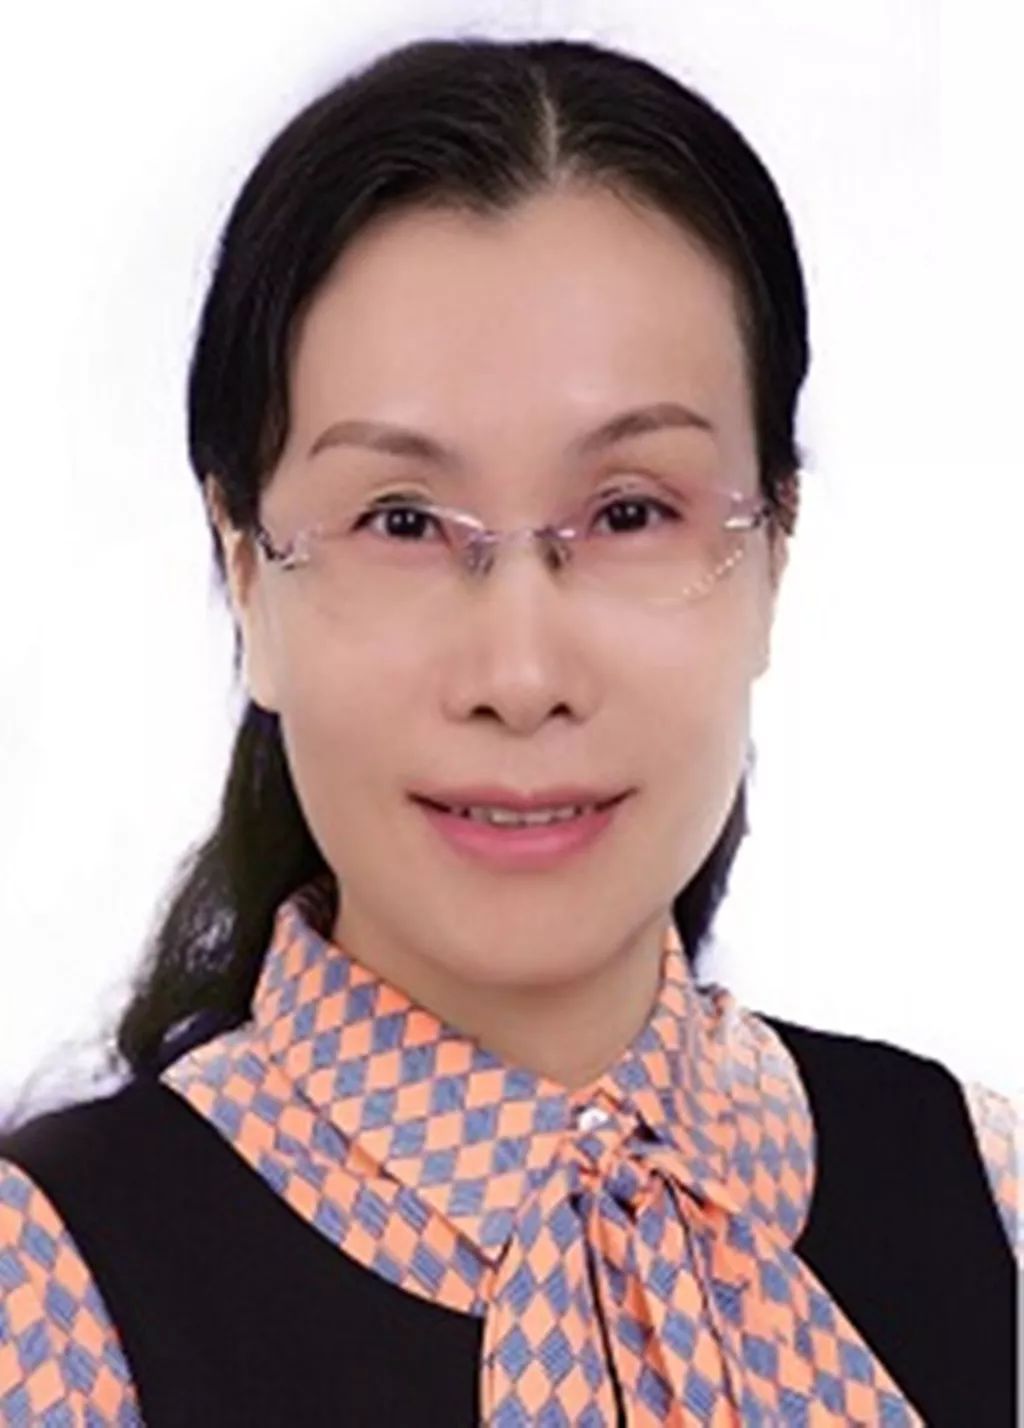 黄石  刘红霞作为一名女性社会组织的负责人,我始终坚信用专业成就更